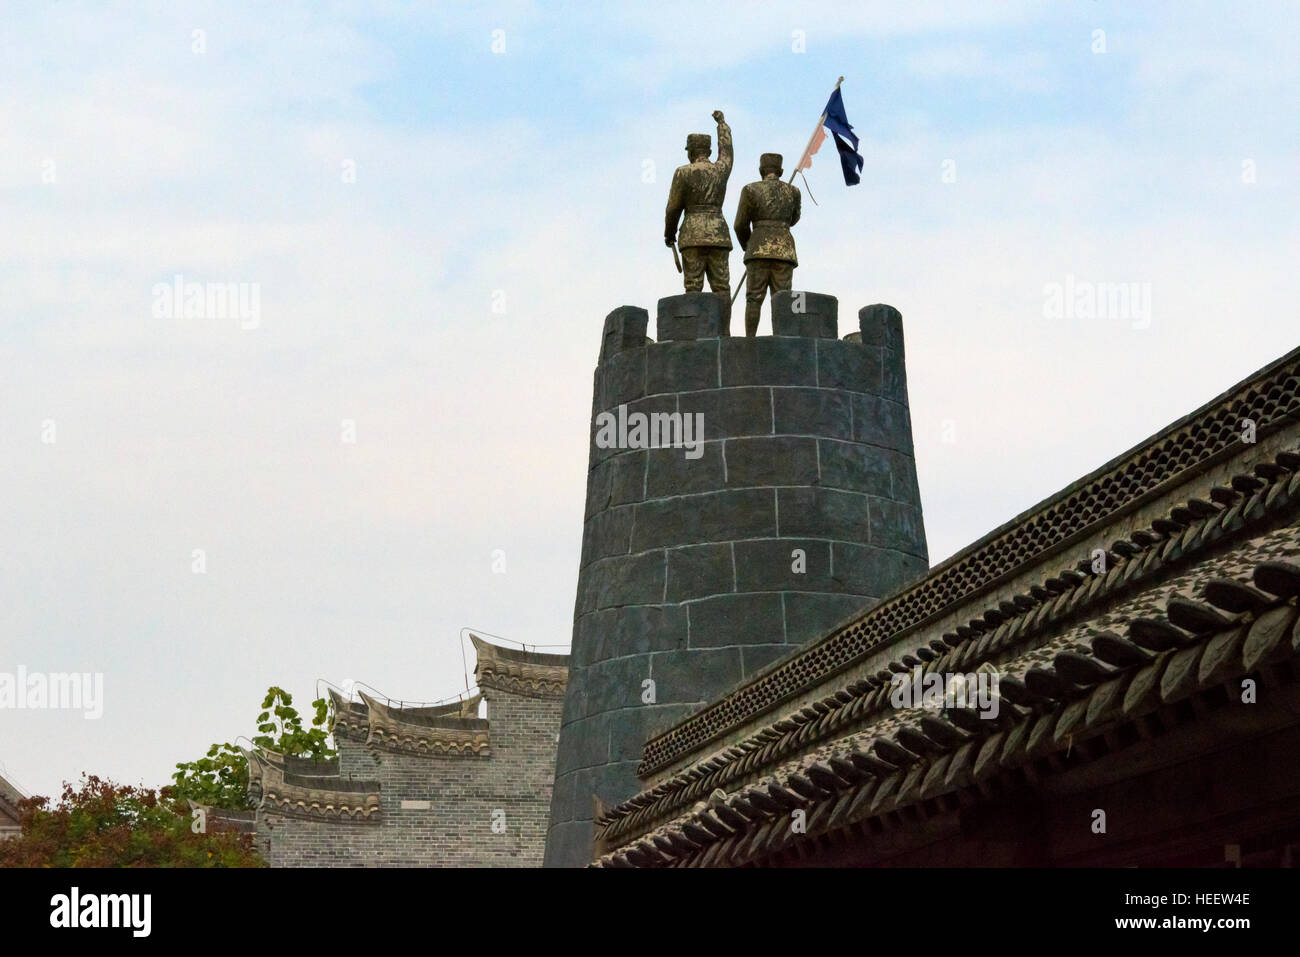 Des statues en bronze sur une forteresse à la mémoire de la guerre anti-japonaise, ancienne ville de Taierzhuang, province de Shandong, Chine Banque D'Images